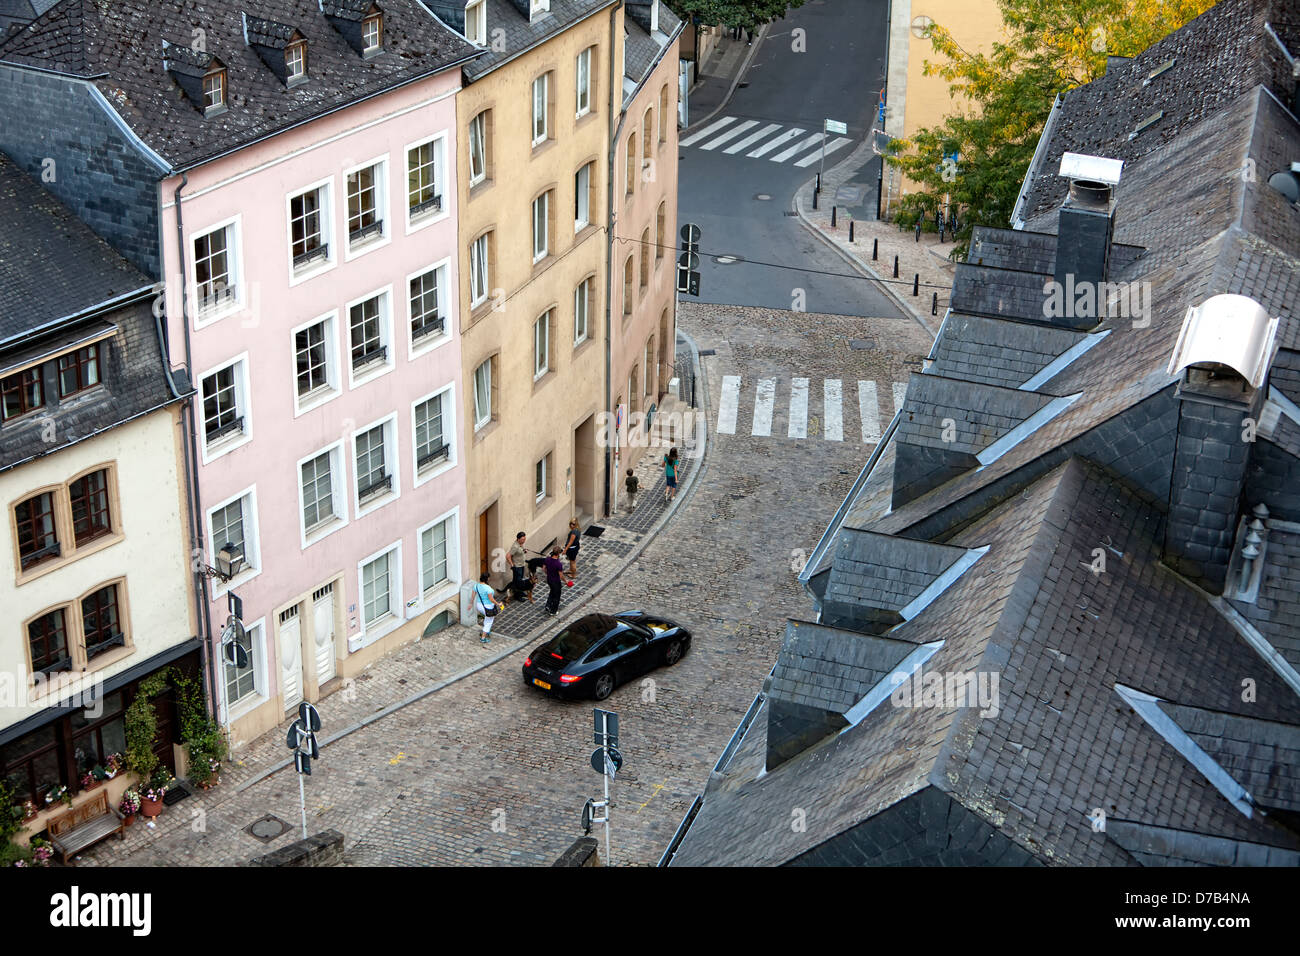 Vue sur les maisons et les rues de la ville basse, Grund, vu de la Corniche, Luxembourg, Europe Banque D'Images